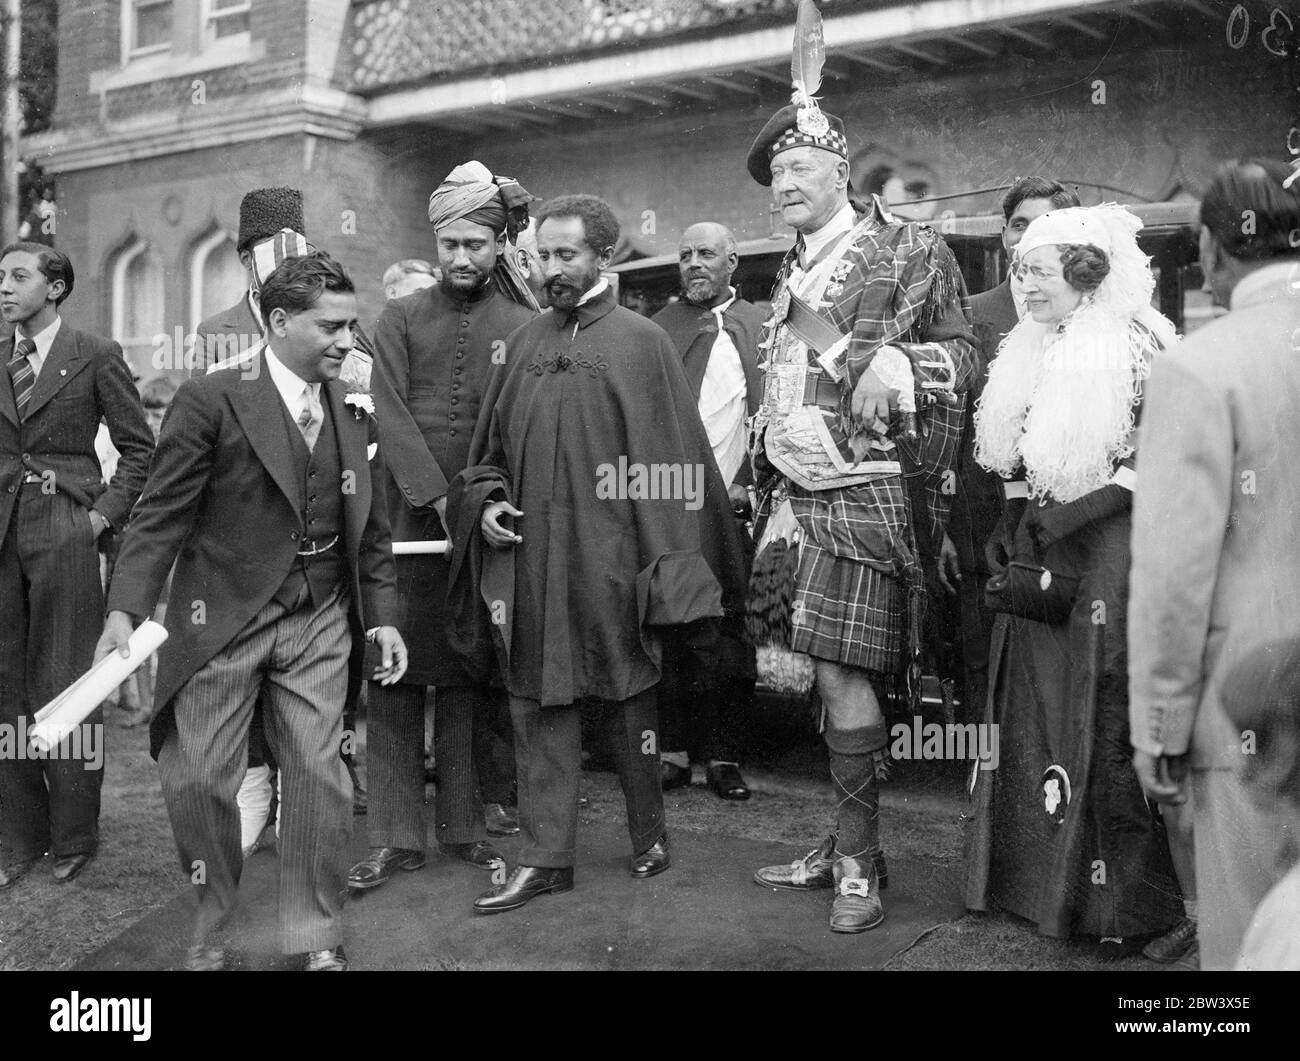 L'imperatore Haile Selassie ha accolto con cornamuse alla Moschea di Woking . L'imperatore Haile Selassie d'Etiopia e i membri della sua famiglia e suite hanno visitato la Moschea di Woking (Surrey) da Bath . La comunità musulmana ha dato un indirizzo di benvenuto , e i potentati indiani erano presenti . Foto spettacoli : Imperatore Haile Selassie con Sir Abdulah Archibald Buchanan Hamilton , che ha accolto con Negus con borsetta - pipe . 25 ago 1936 titolo originale negativo la moschea Shah Jahan fu la prima moschea costruita appositamente in Europa al di fuori della Spagna musulmana Foto Stock